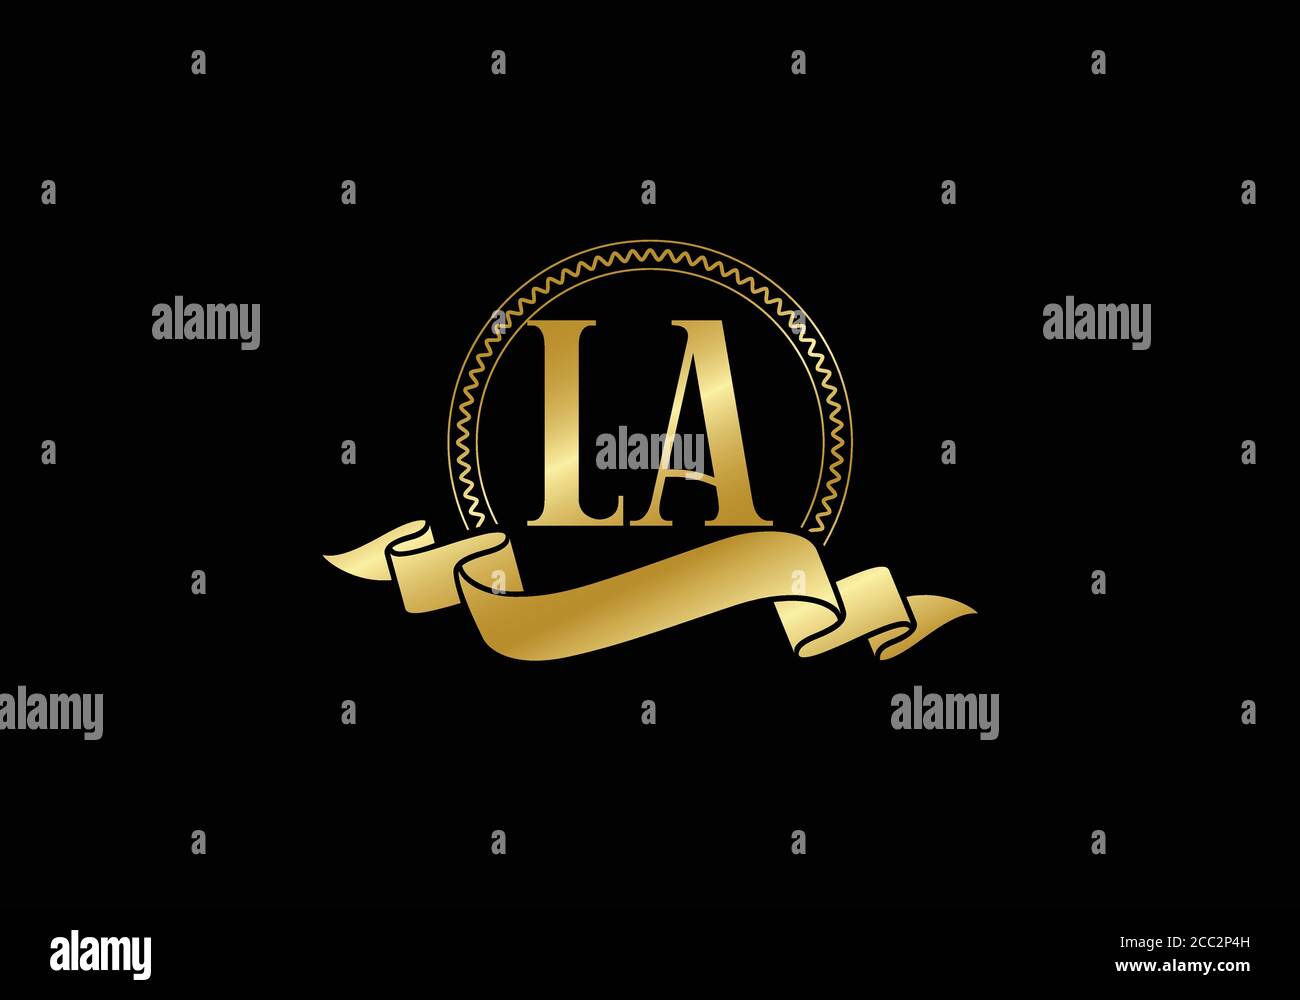 Lv diseño de letras fotografías e imágenes de alta resolución - Alamy